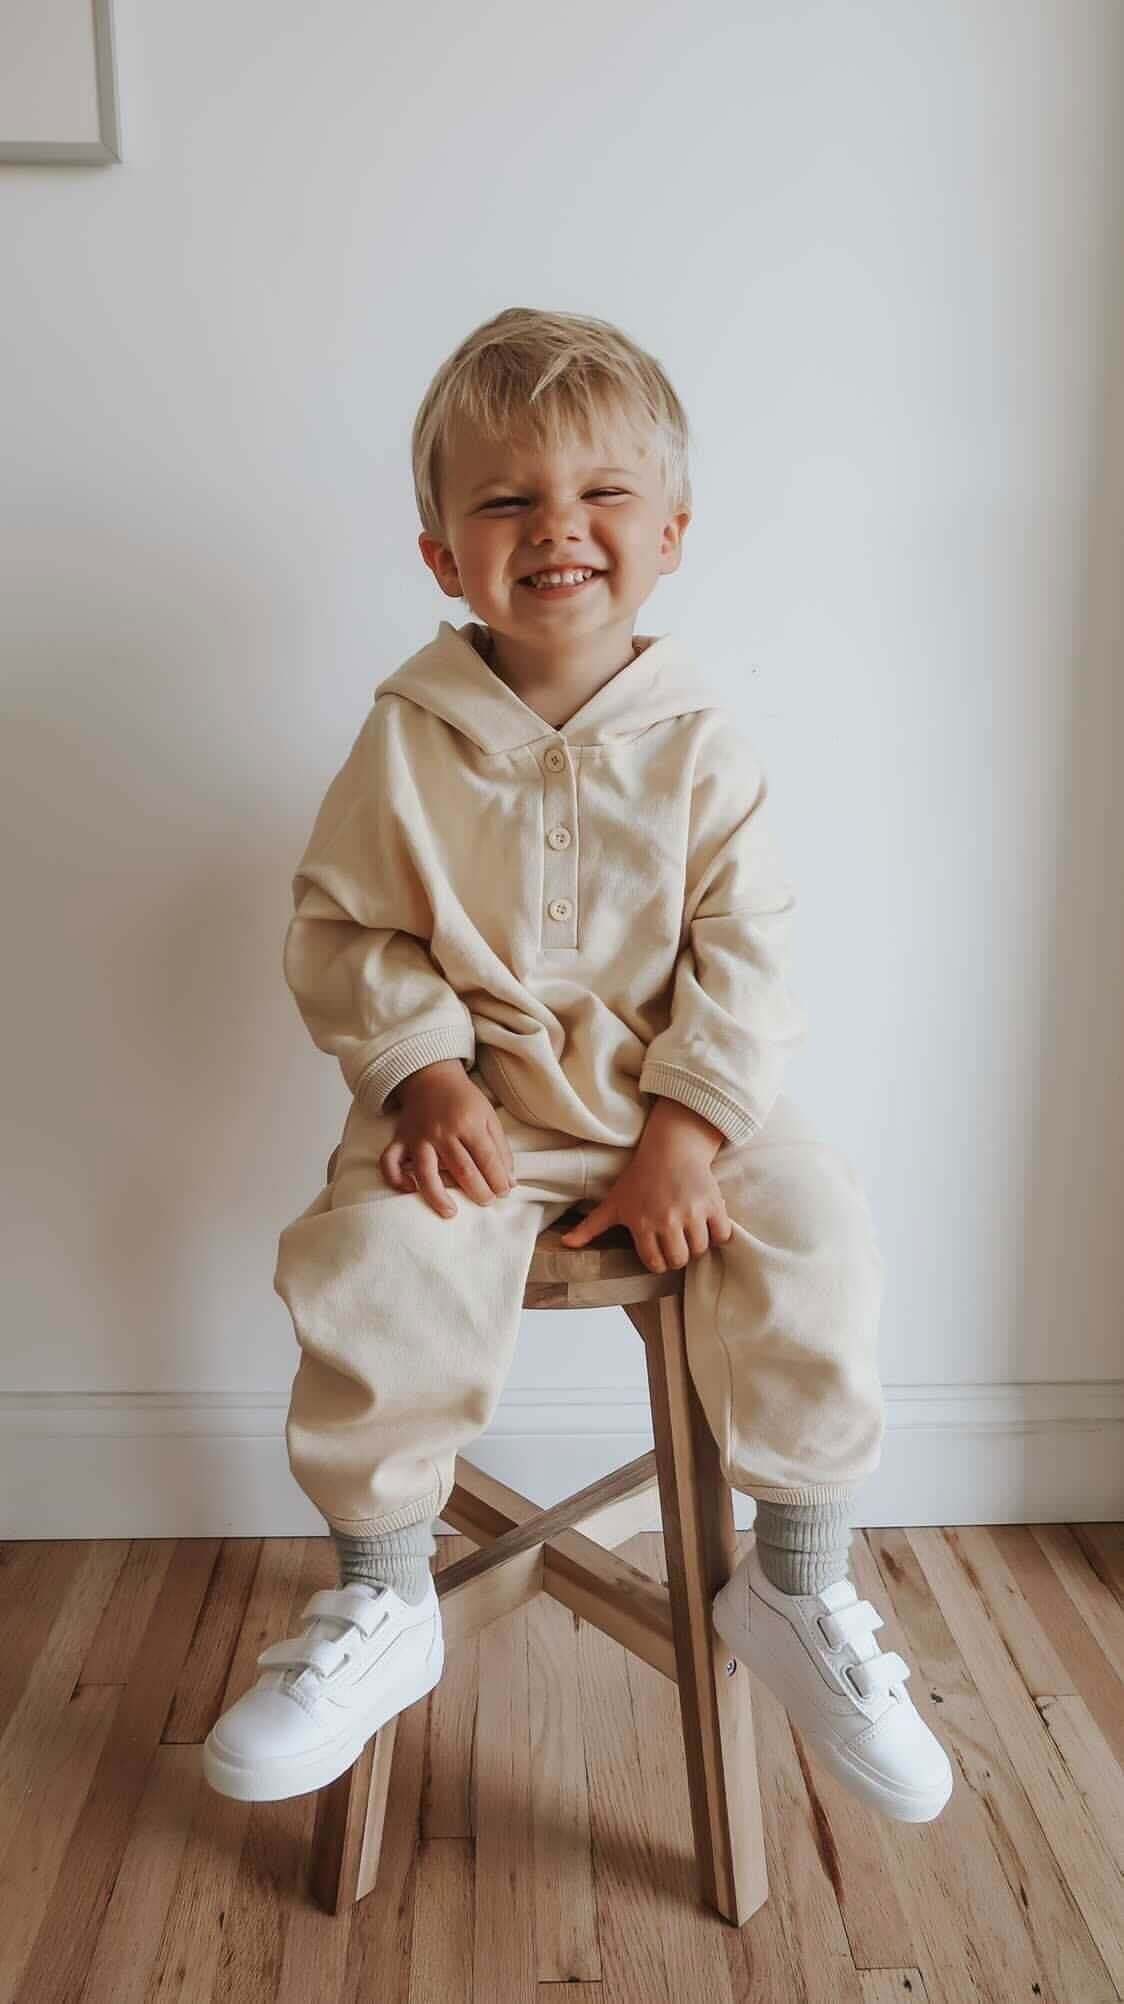 (已失效)Successful 3 Year Old Baby Clothing Brand For Sale